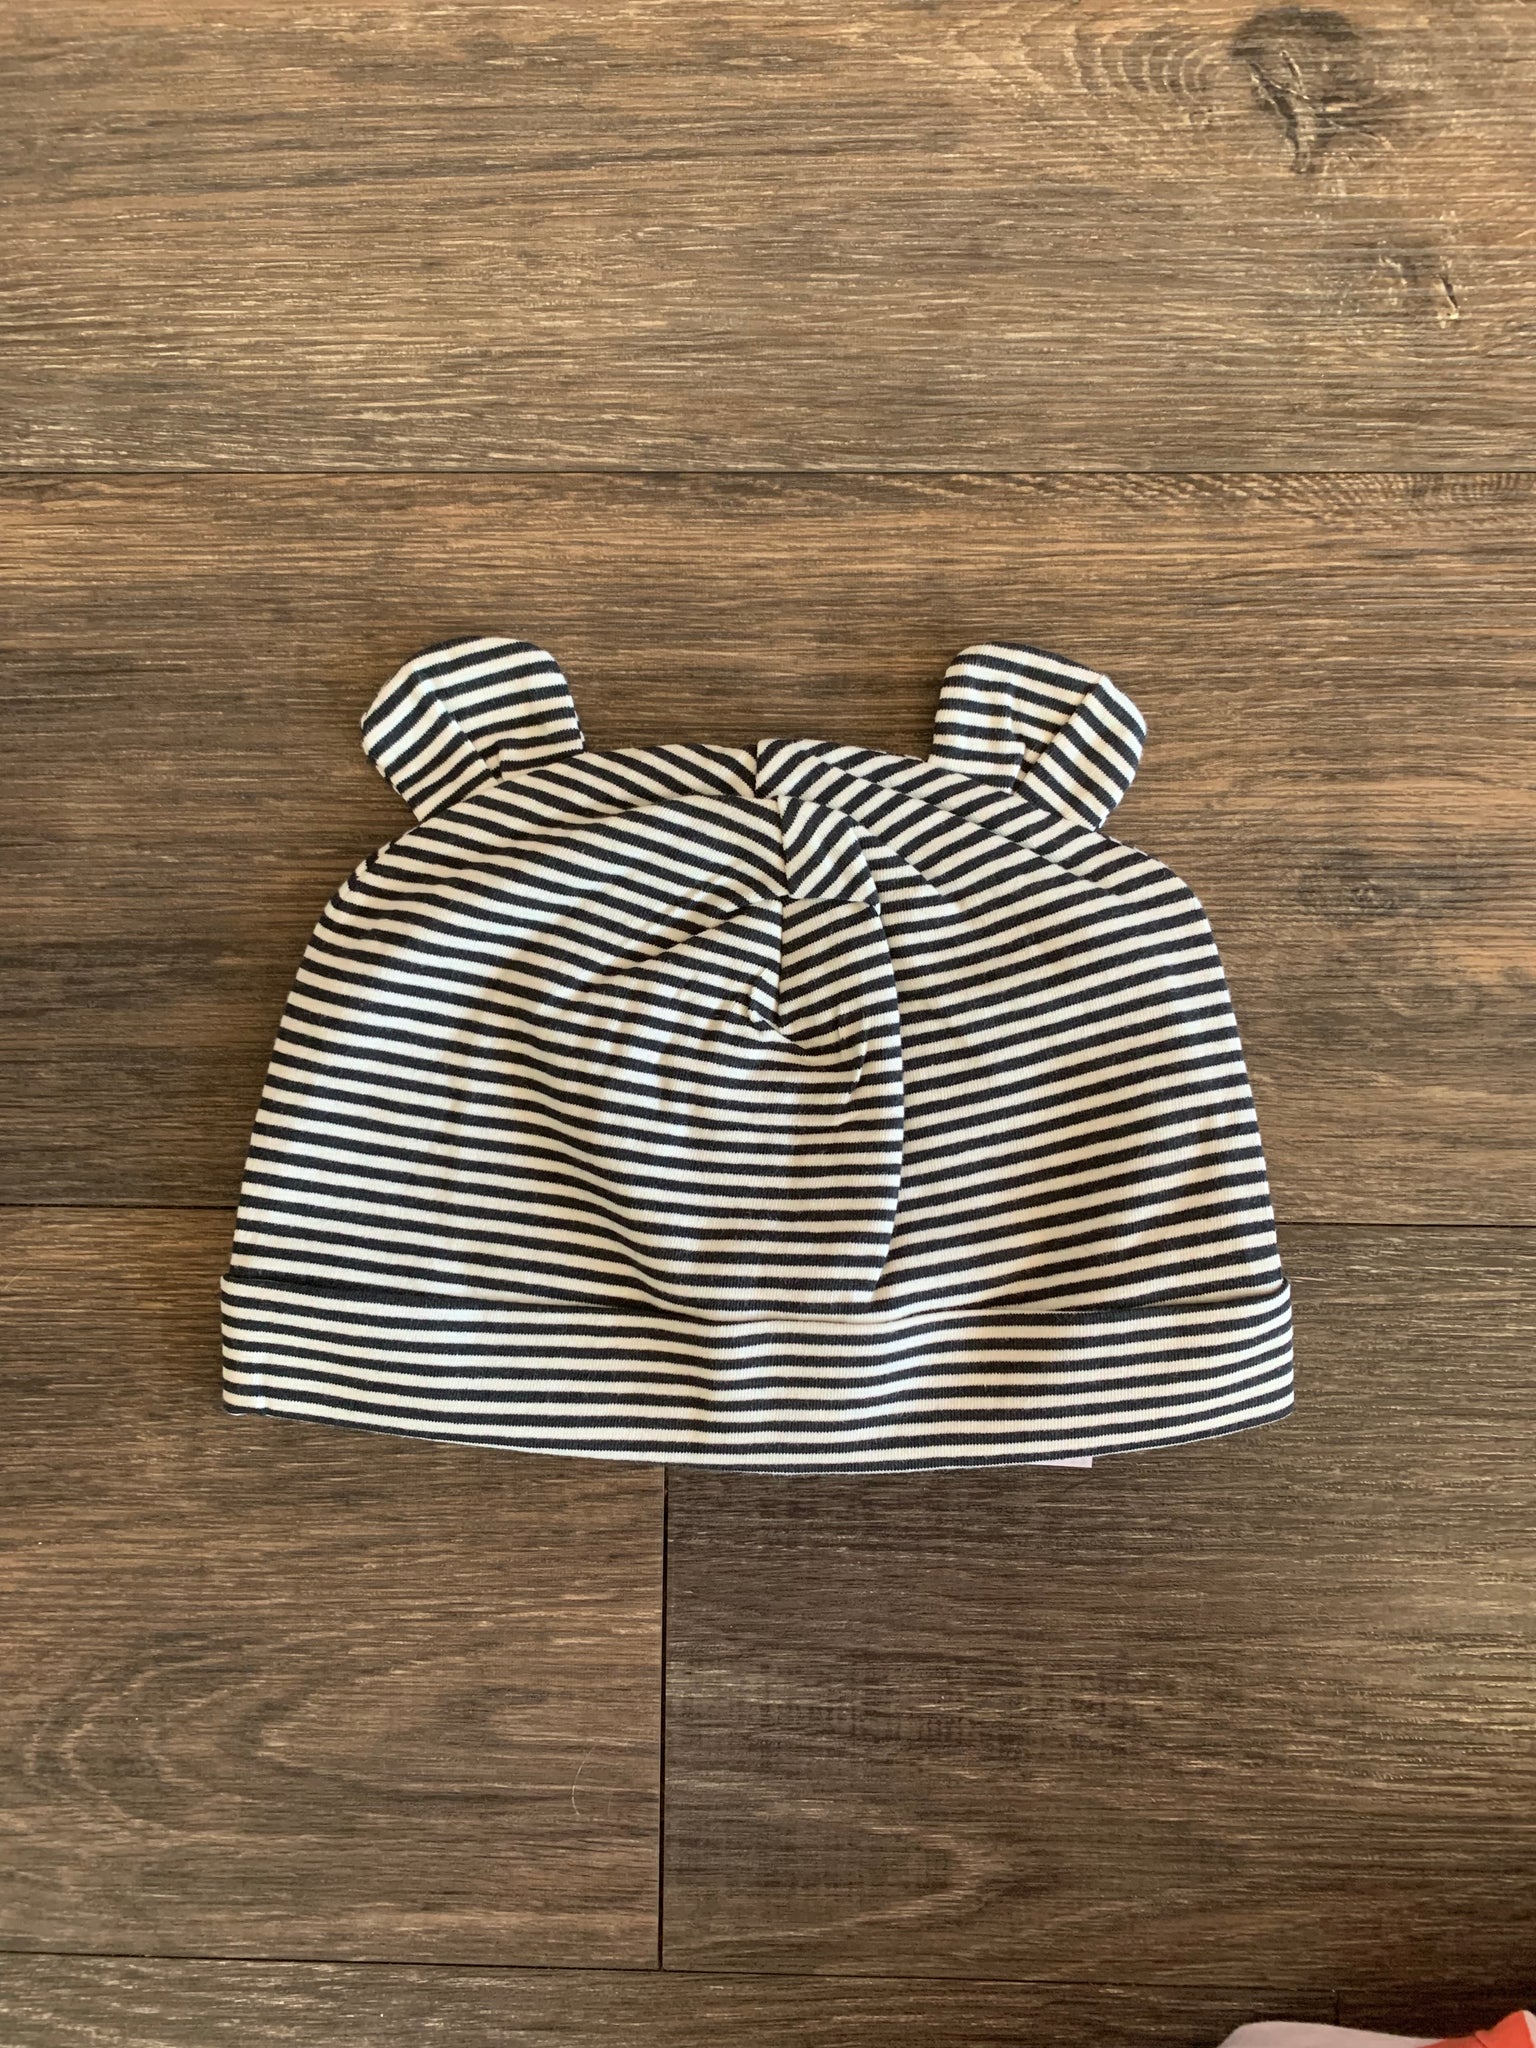 Infant Knit Hat - Black Stripe